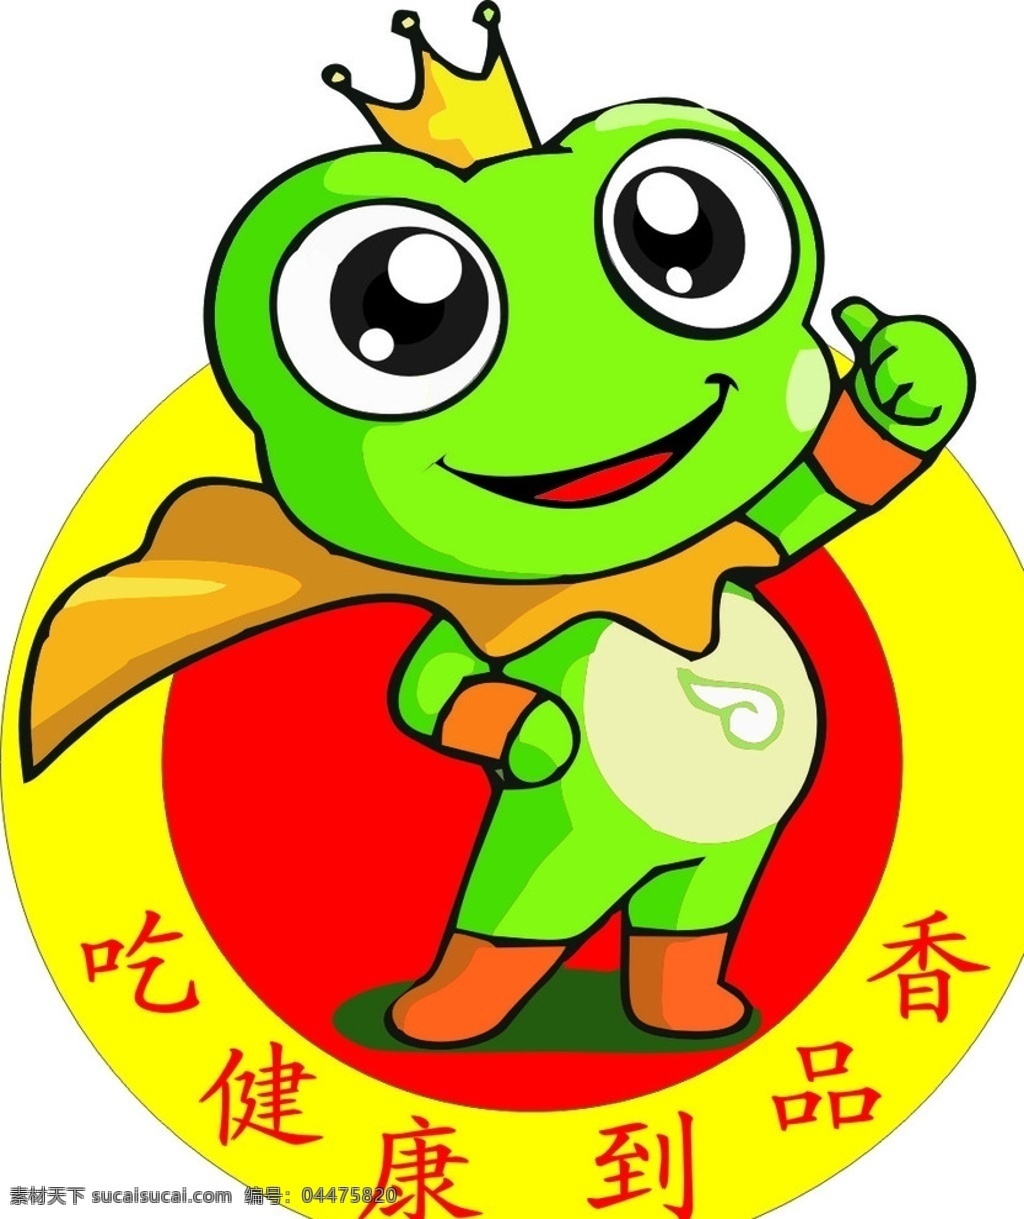 美蛙 鱼头 火锅 logo 原创 餐饮 logo设计